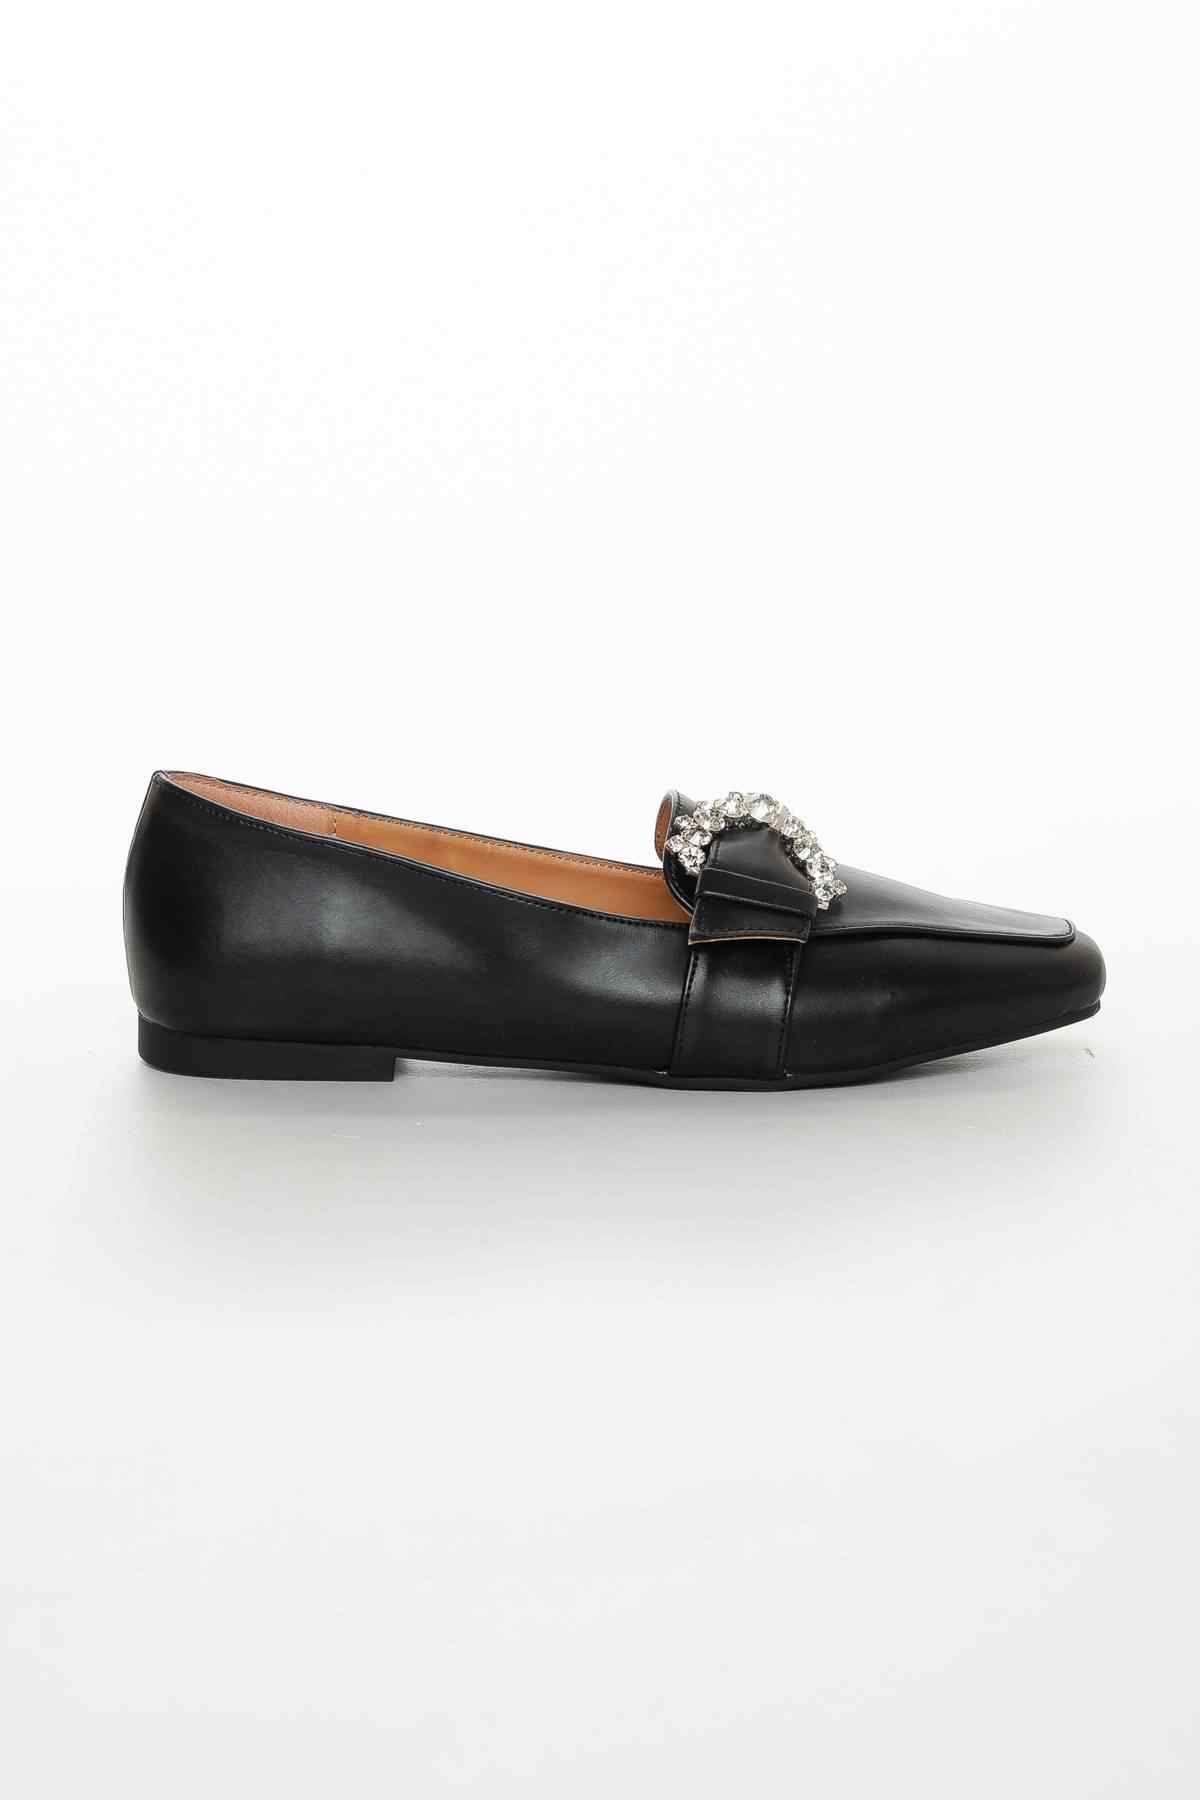 Kadın günlük ayakkabı taşlı  lofer fls0022   Siyah